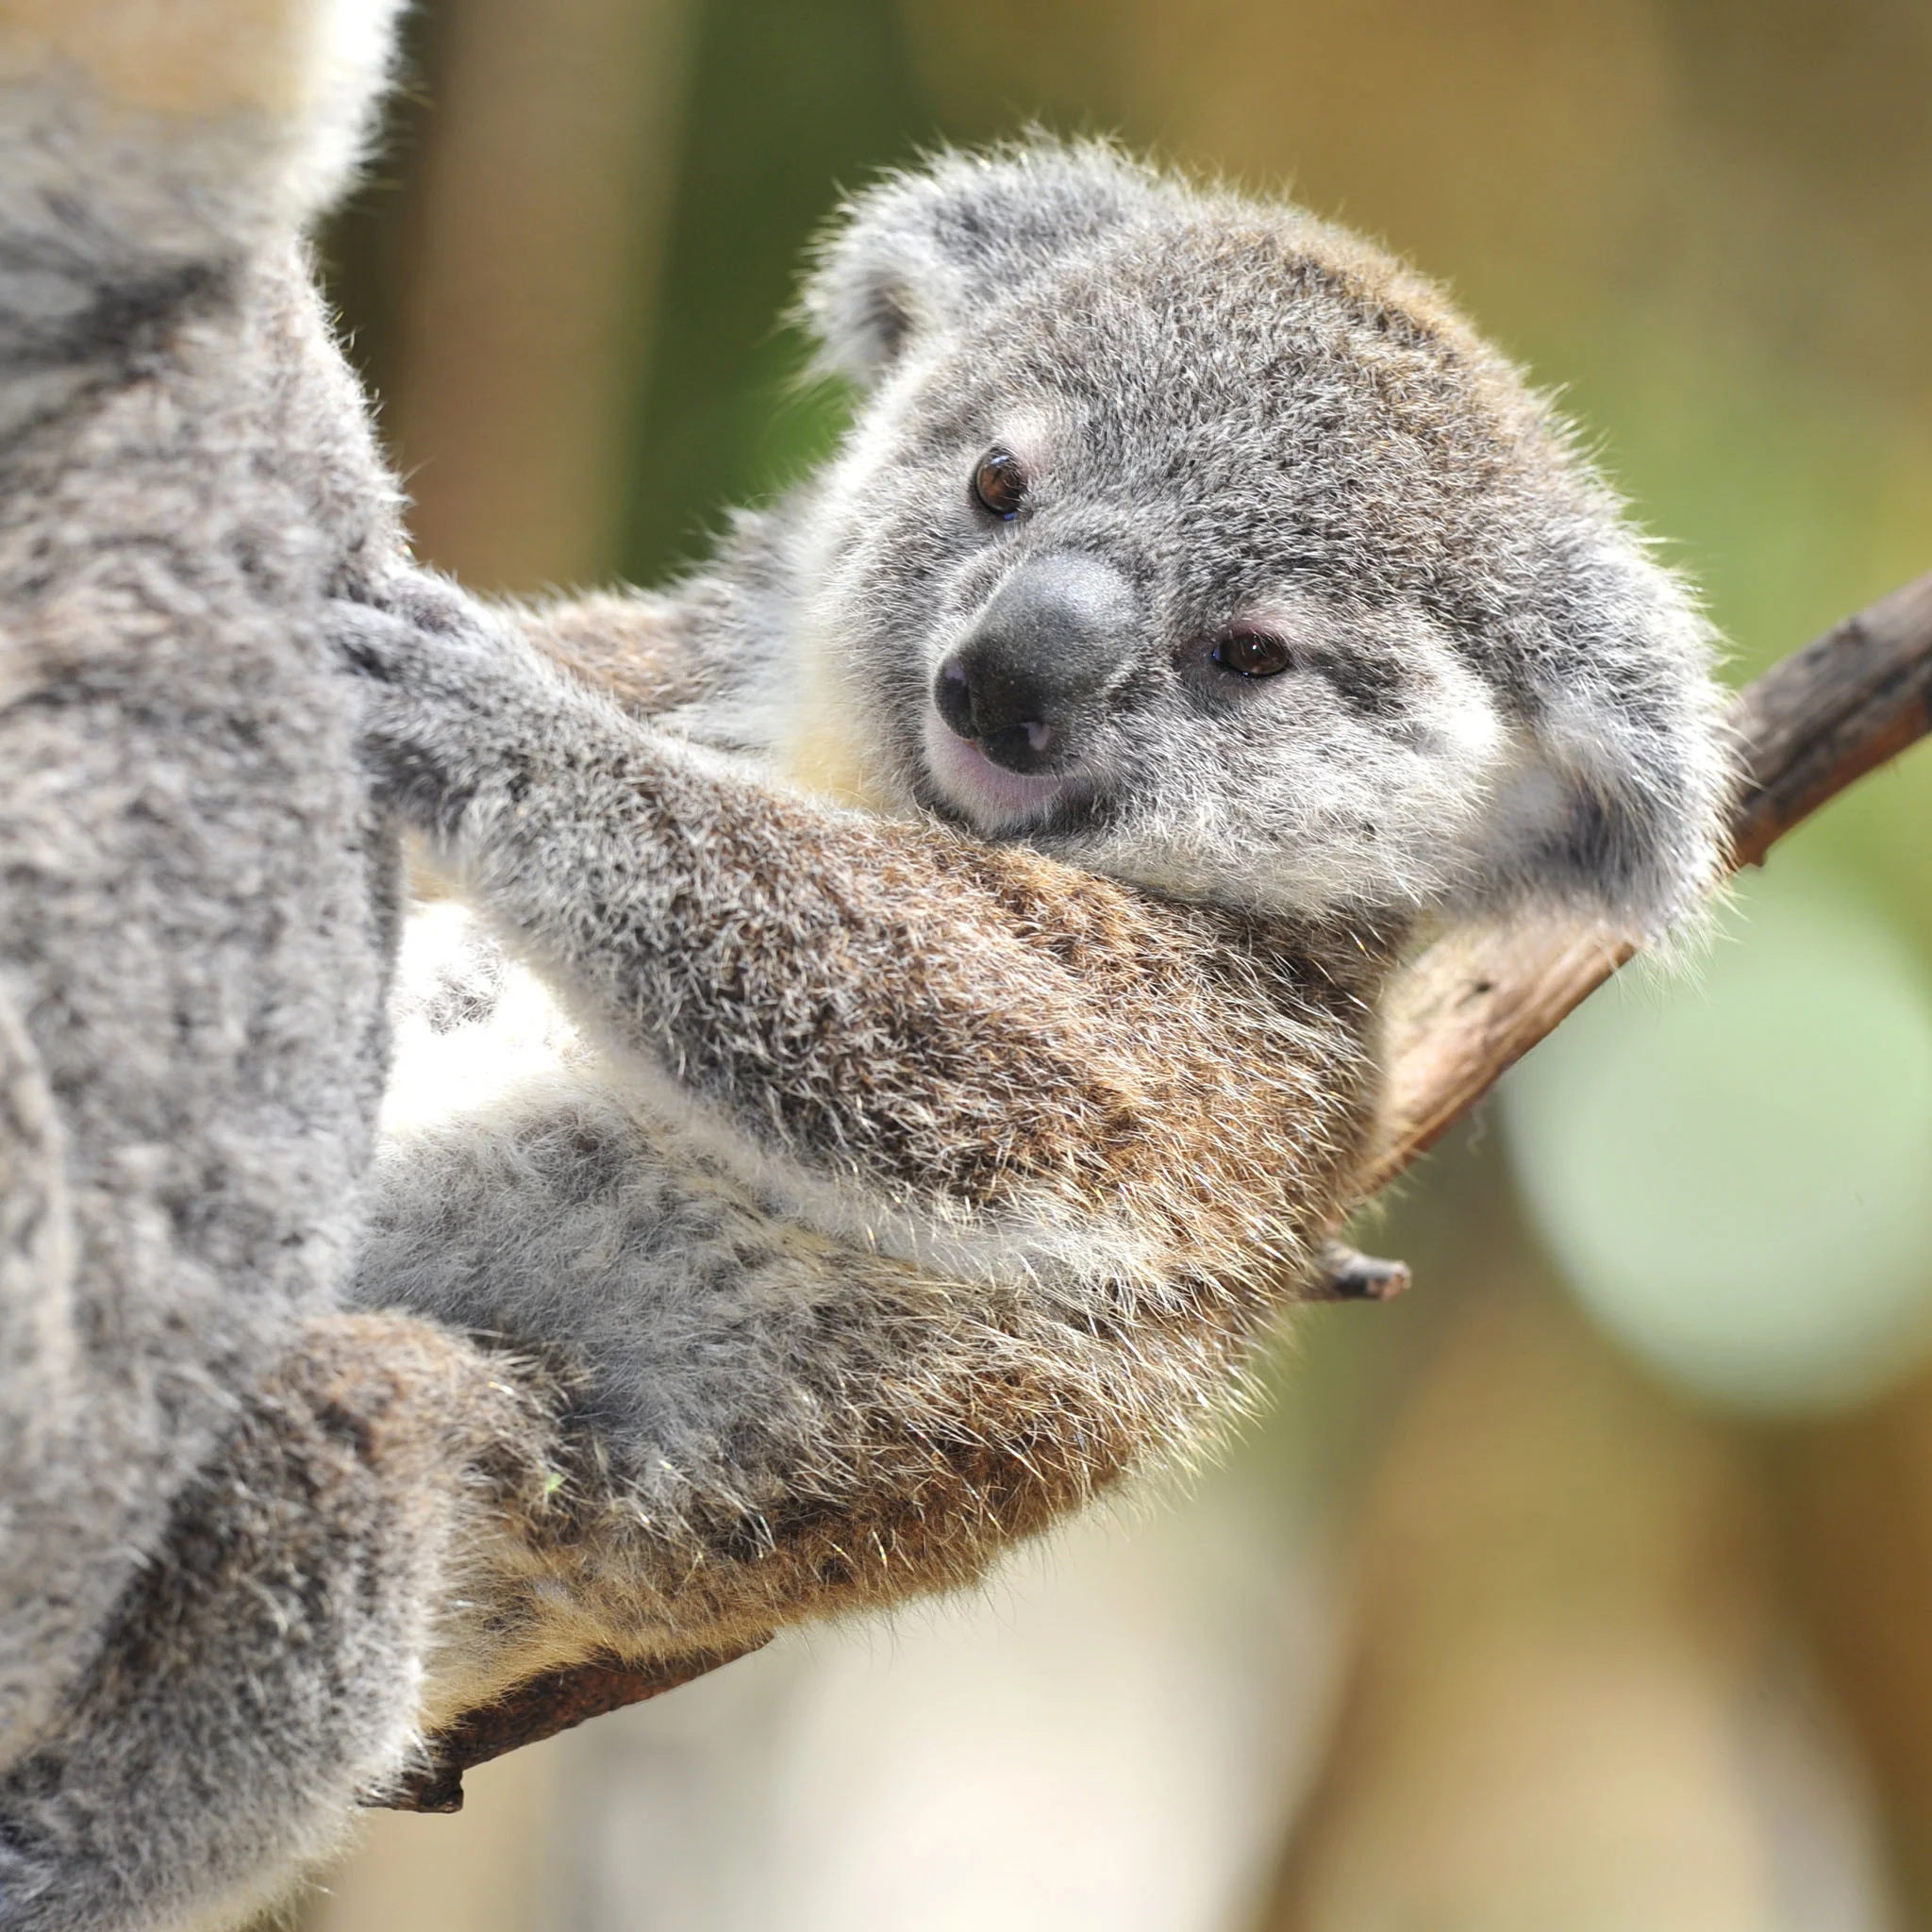 Precious baby koalas, Fluffy little ones, Cutest koala infants, Koala nursery, 2050x2050 HD Handy